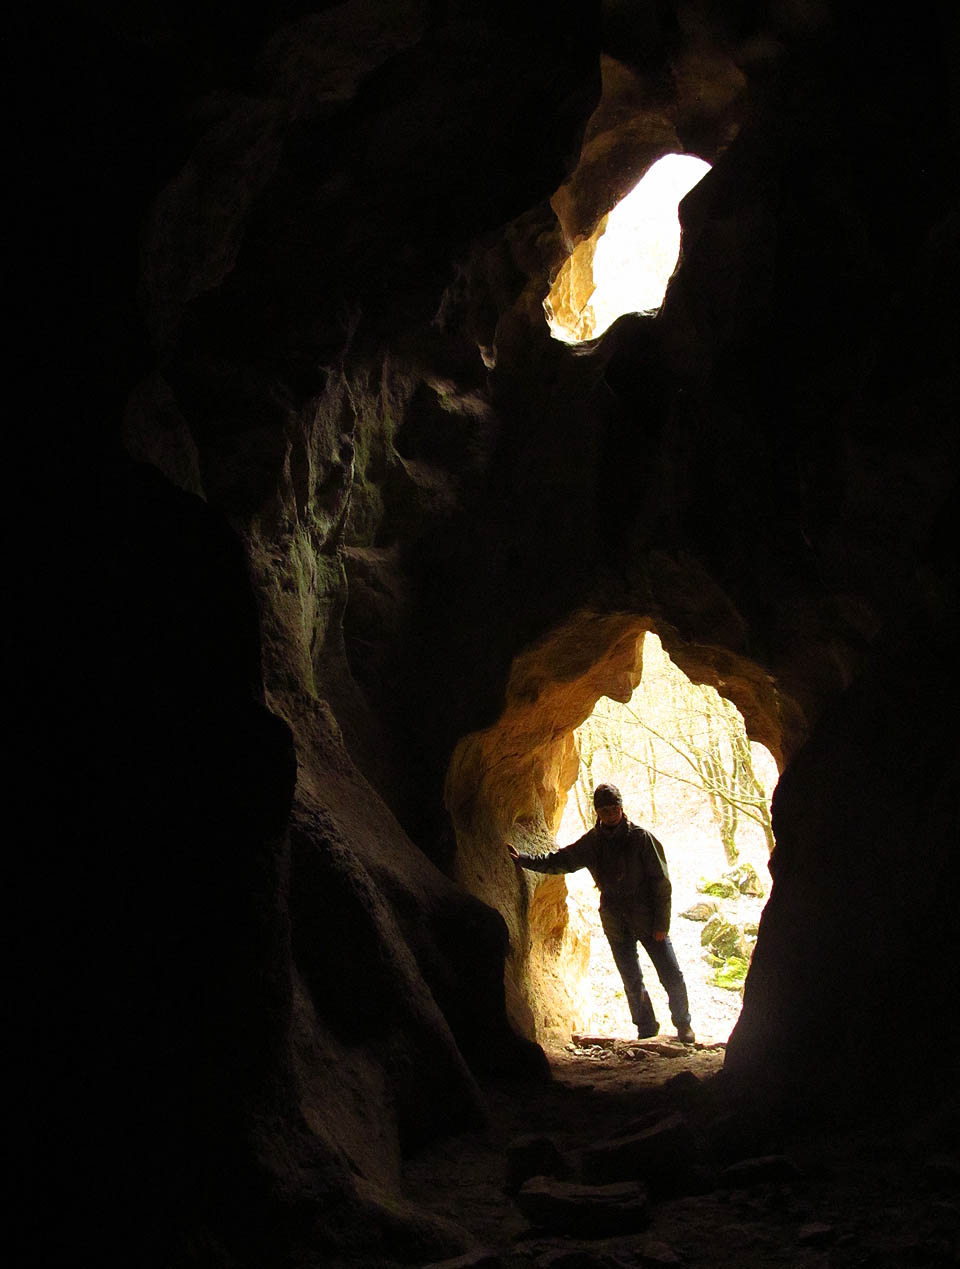 V lomu je několik jeskyní různé velikosti. Mezi nimi také Chlupáčova sluj, ve které byly nalezeny kosti z doby kamenné.